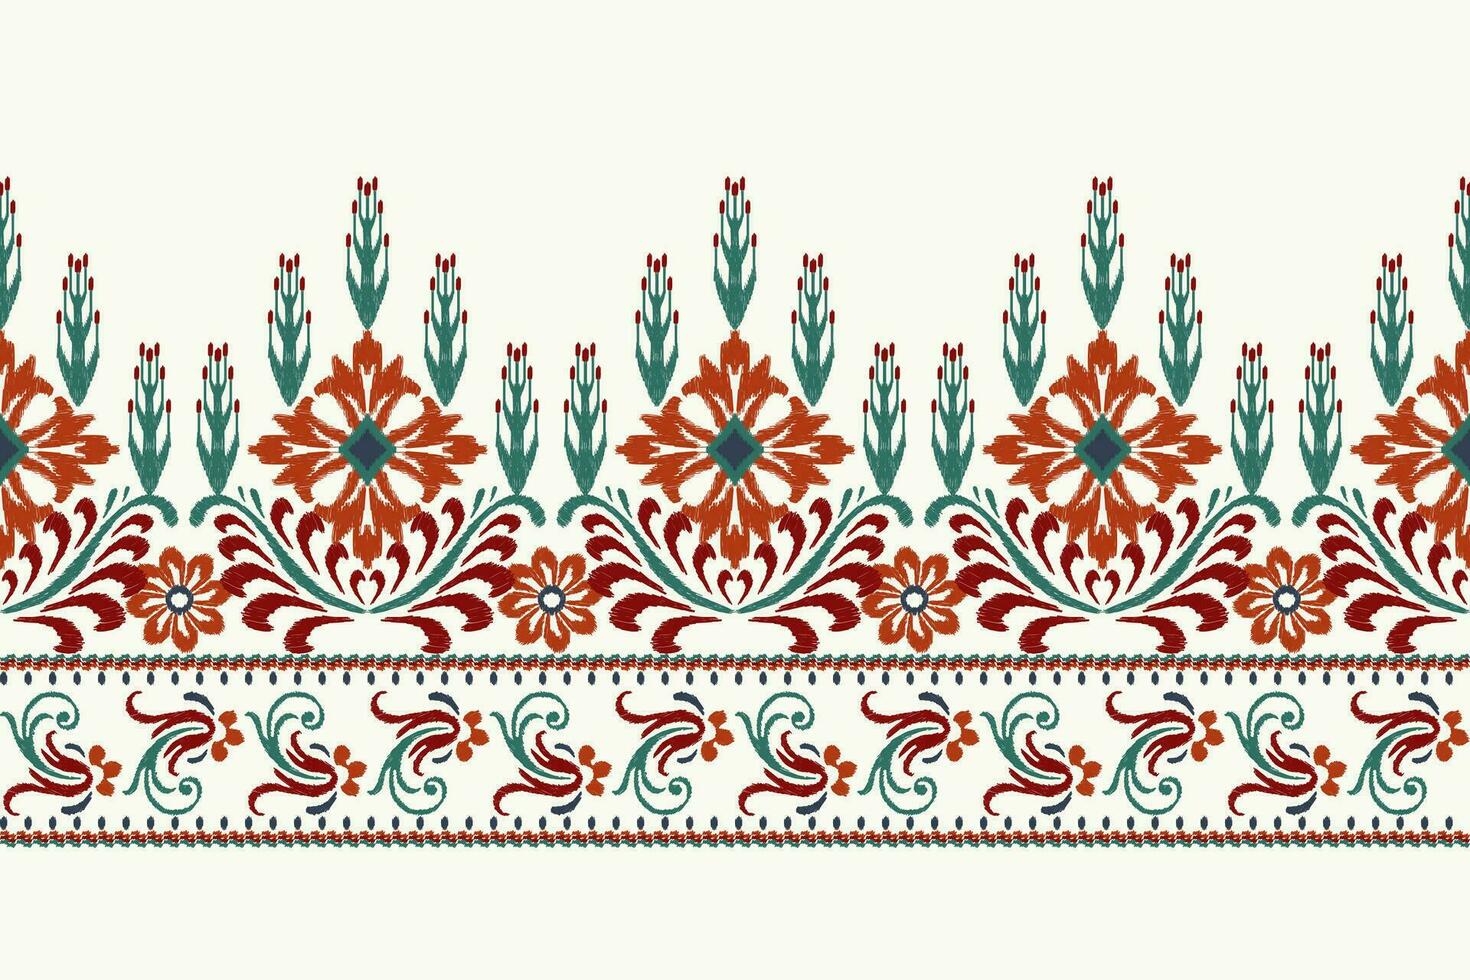 ikat floral paisley broderie sur blanc background.ikat ethnique Oriental modèle traditionnel.aztèque style abstrait vecteur illustration.design pour texture, tissu, vêtements, emballage, décoration, sarong, écharpe